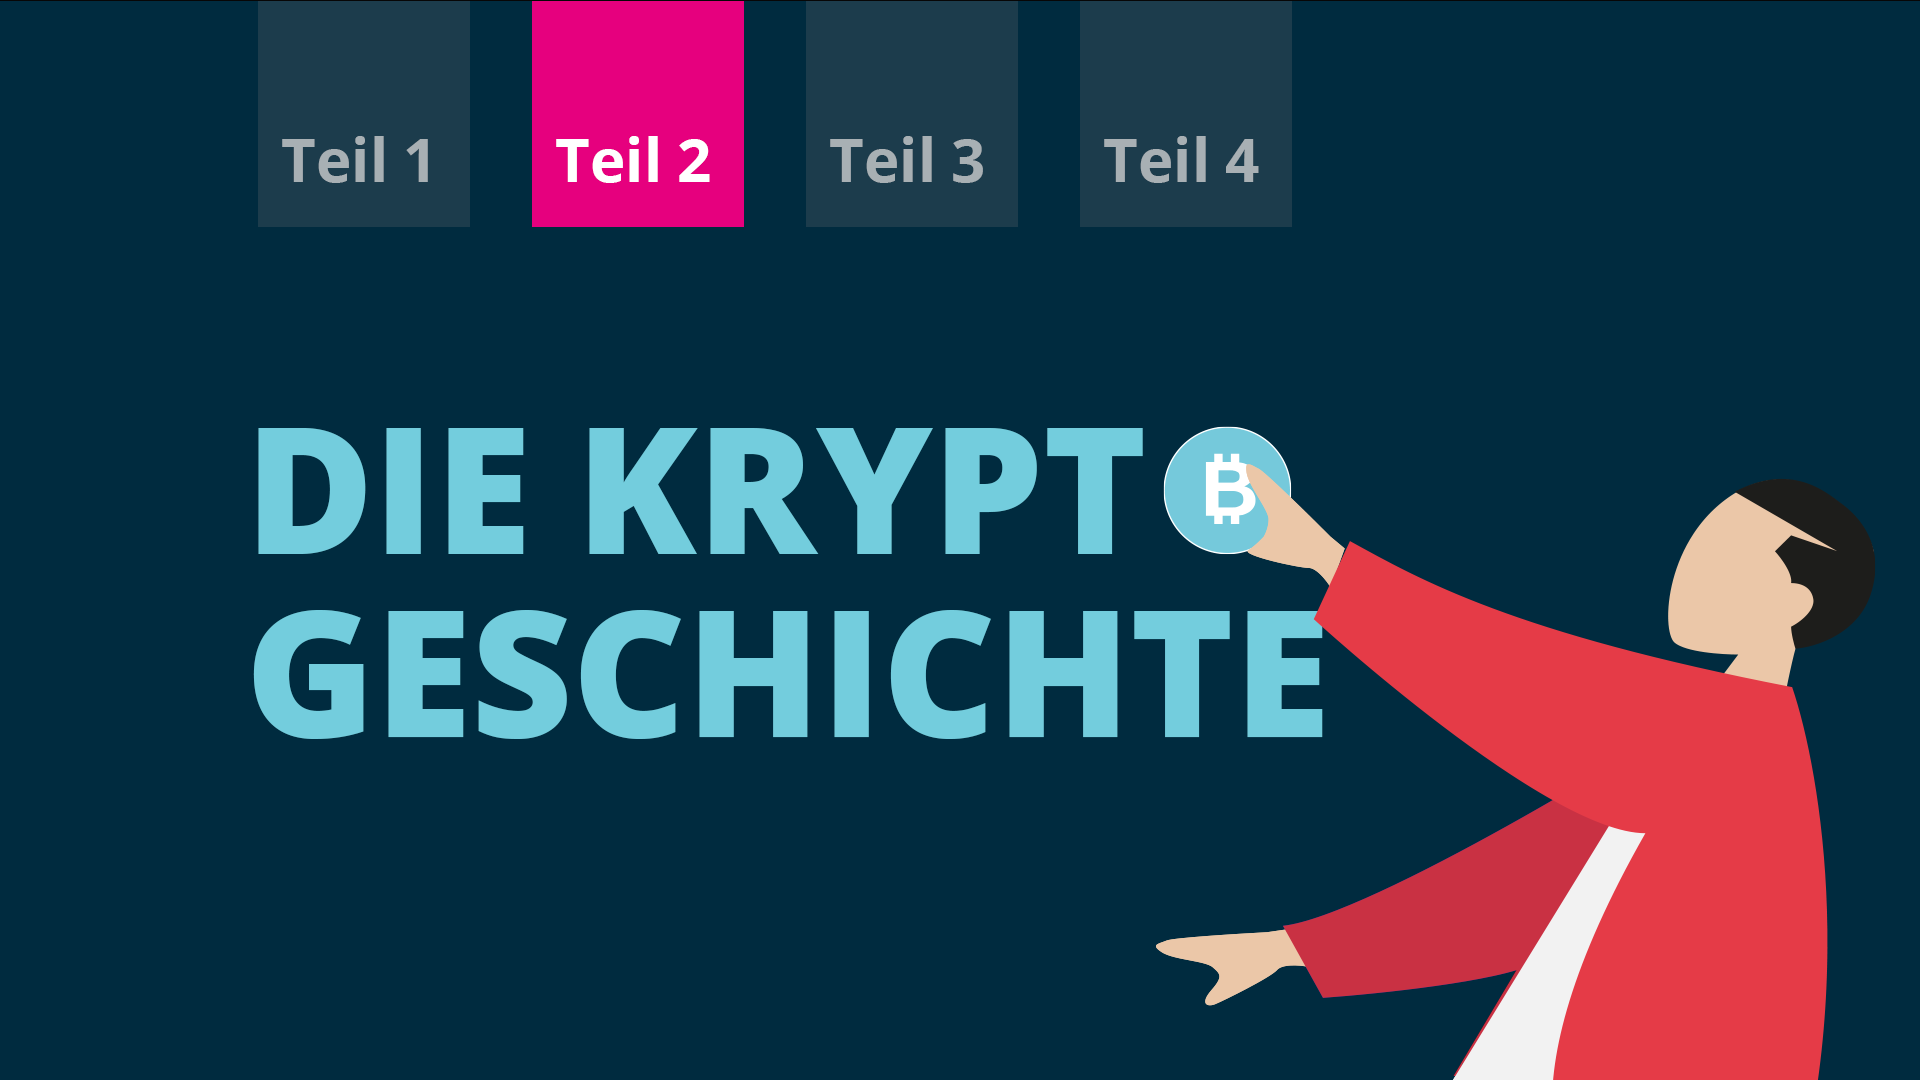 Grt Krypto News – Welche kryptowährung gibt es bei coinbase